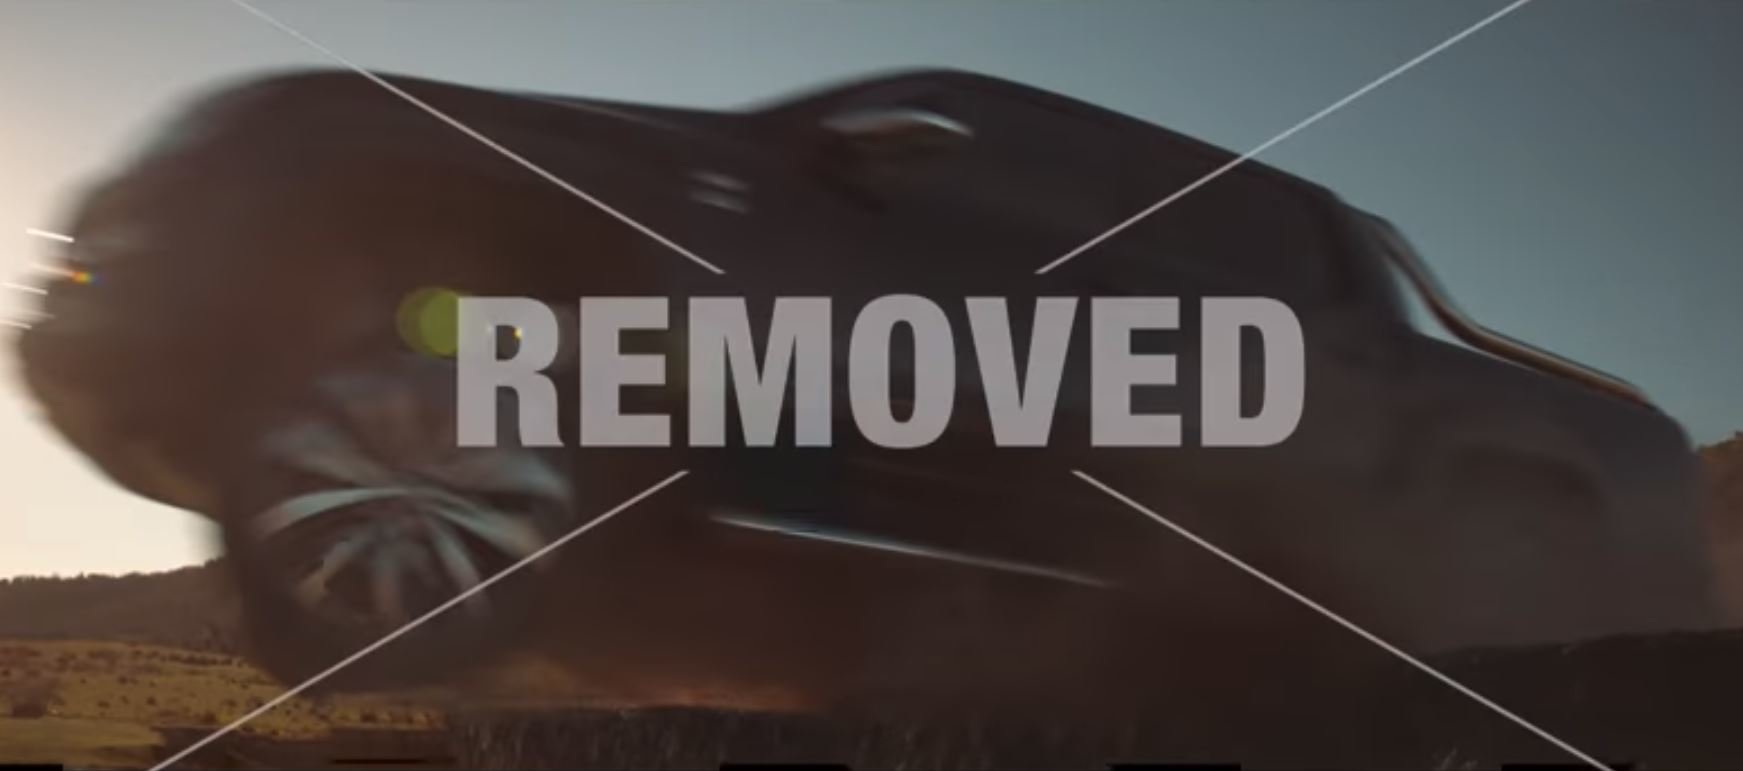 Reklama na Volkswagen Amarok V6 si utahovala ze zákazů v reklamách, nakonec ji ale také zakázali